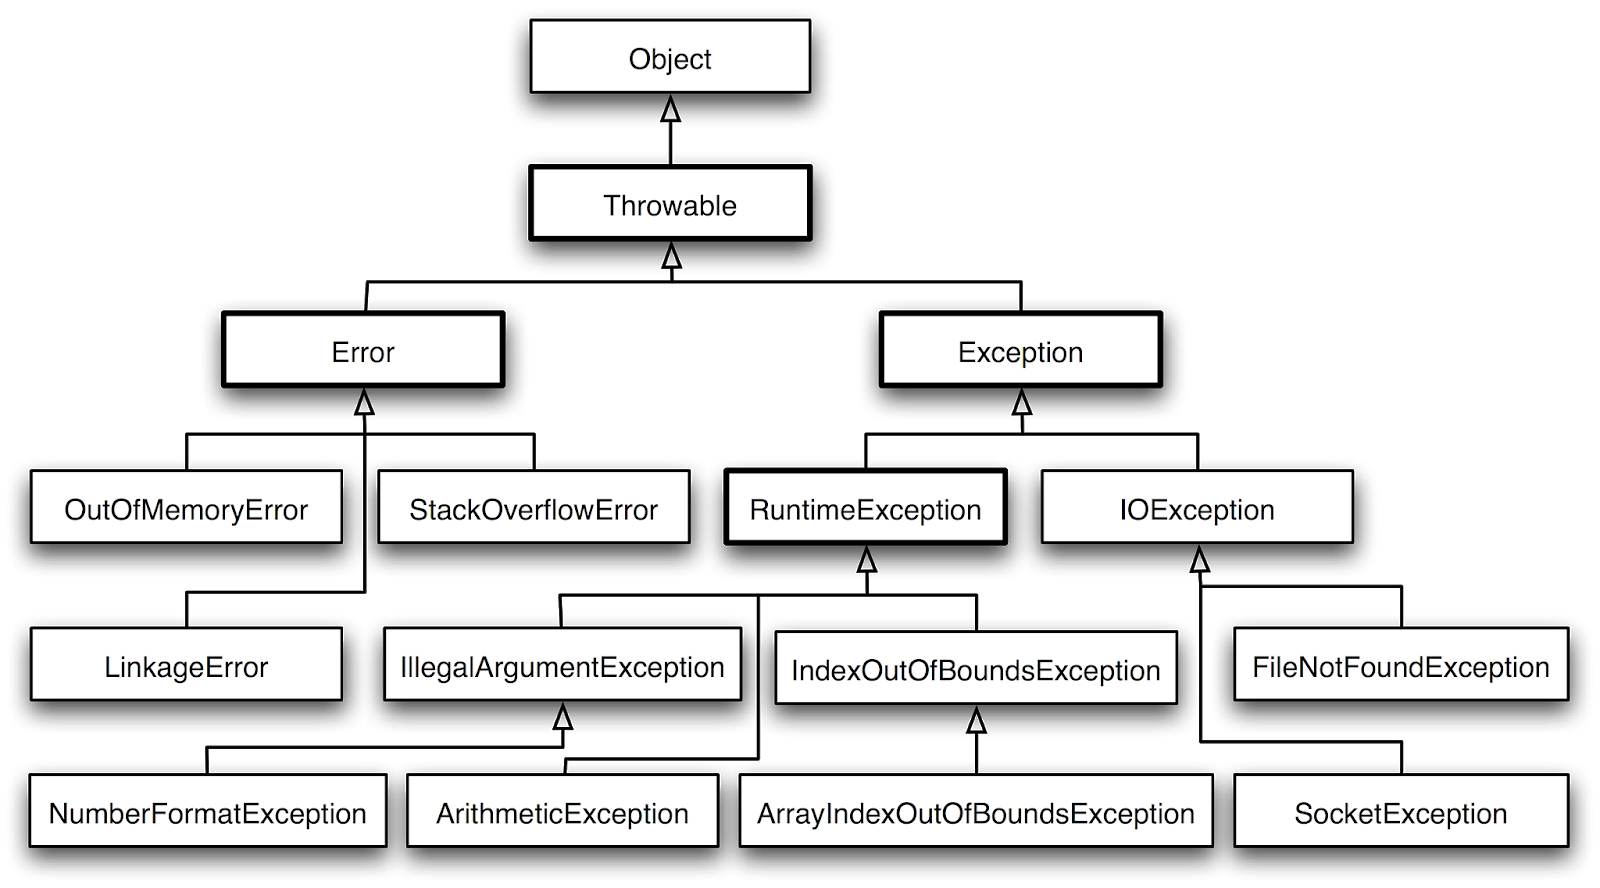 Иерархия классов исключений в java. Дерево исключений java. Java exception Hierarchy. Структура исключений java.